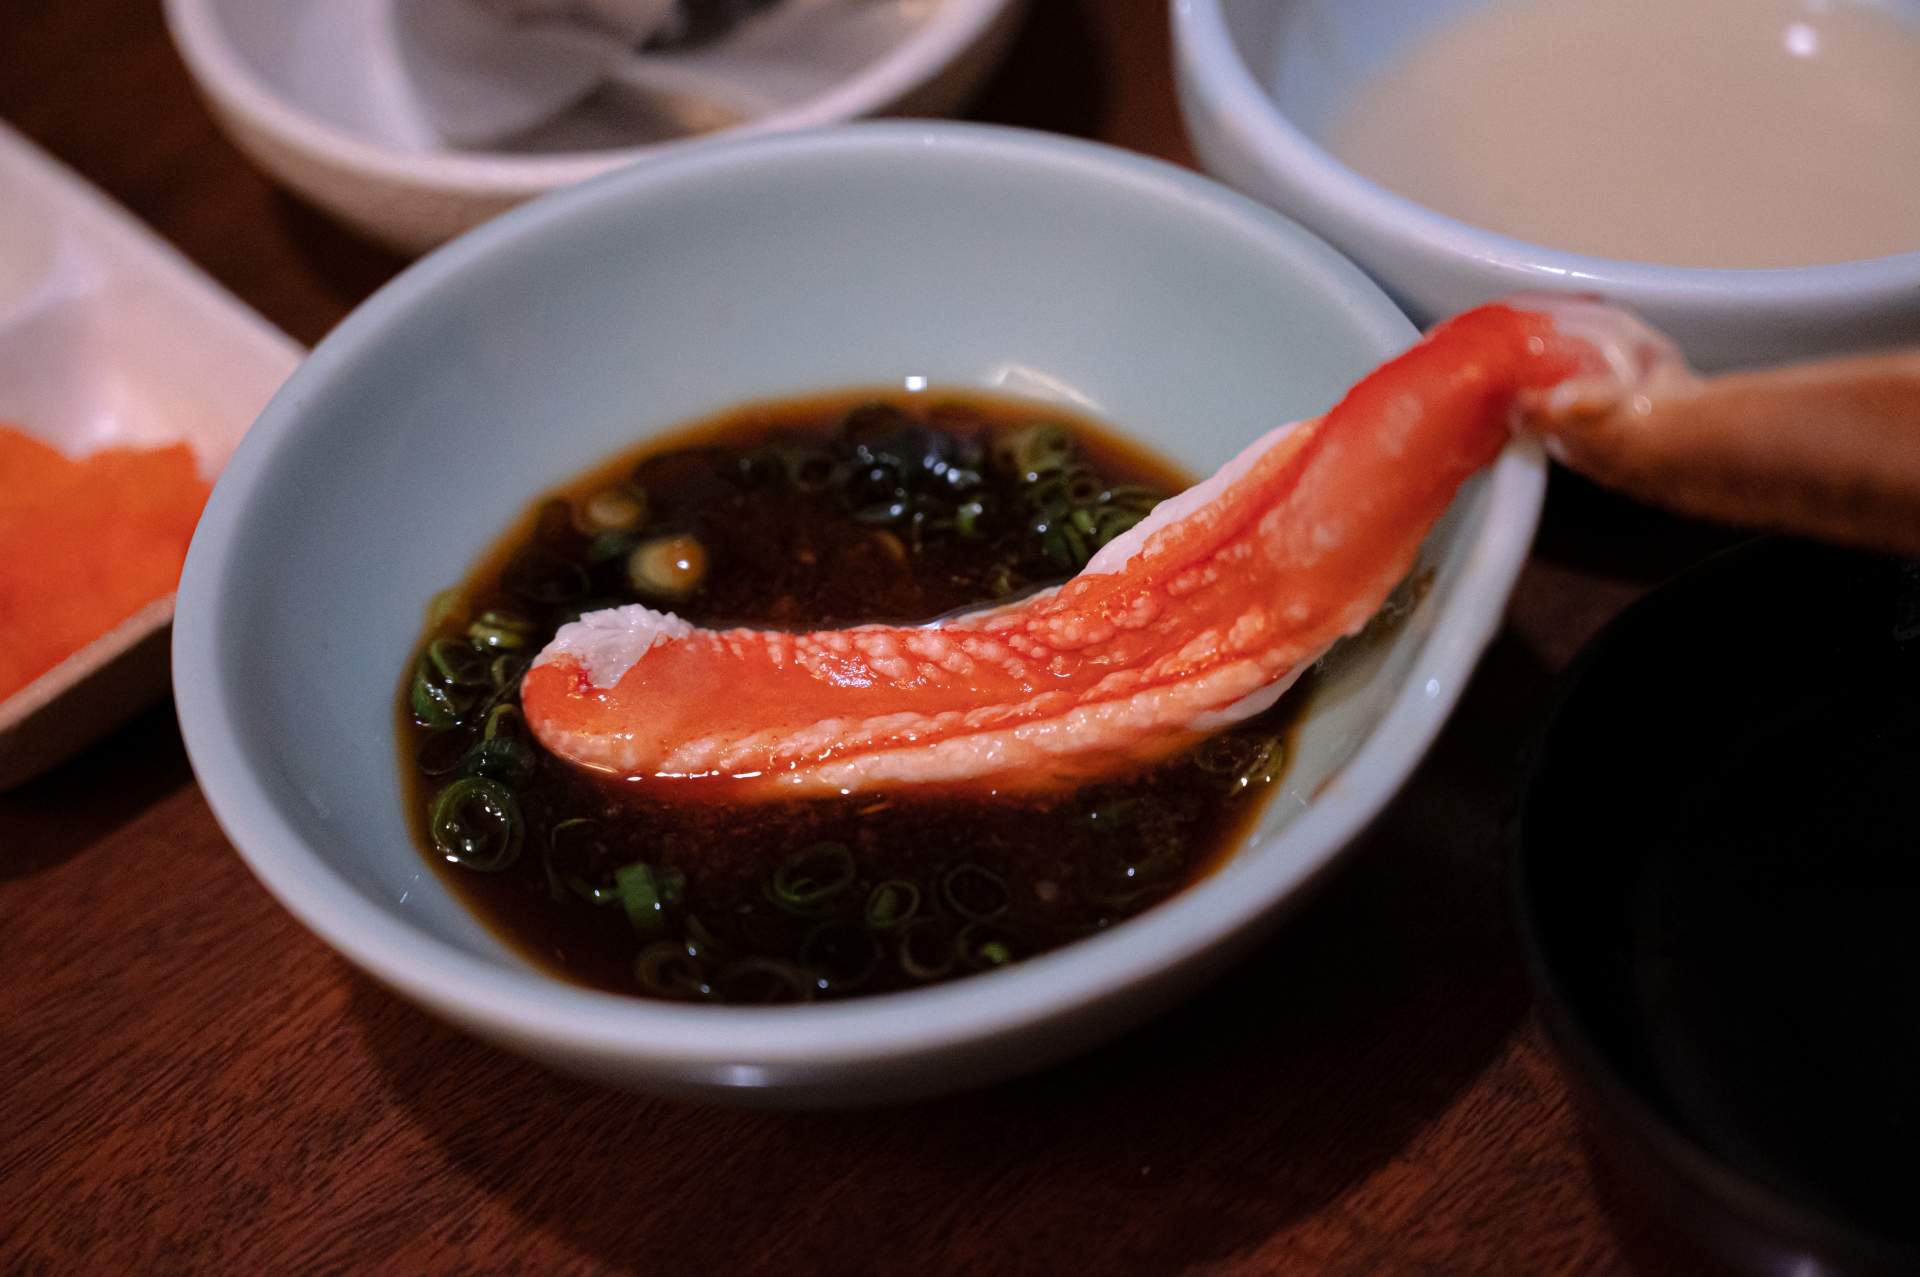 ボイル蟹を楽しむための鍋料理